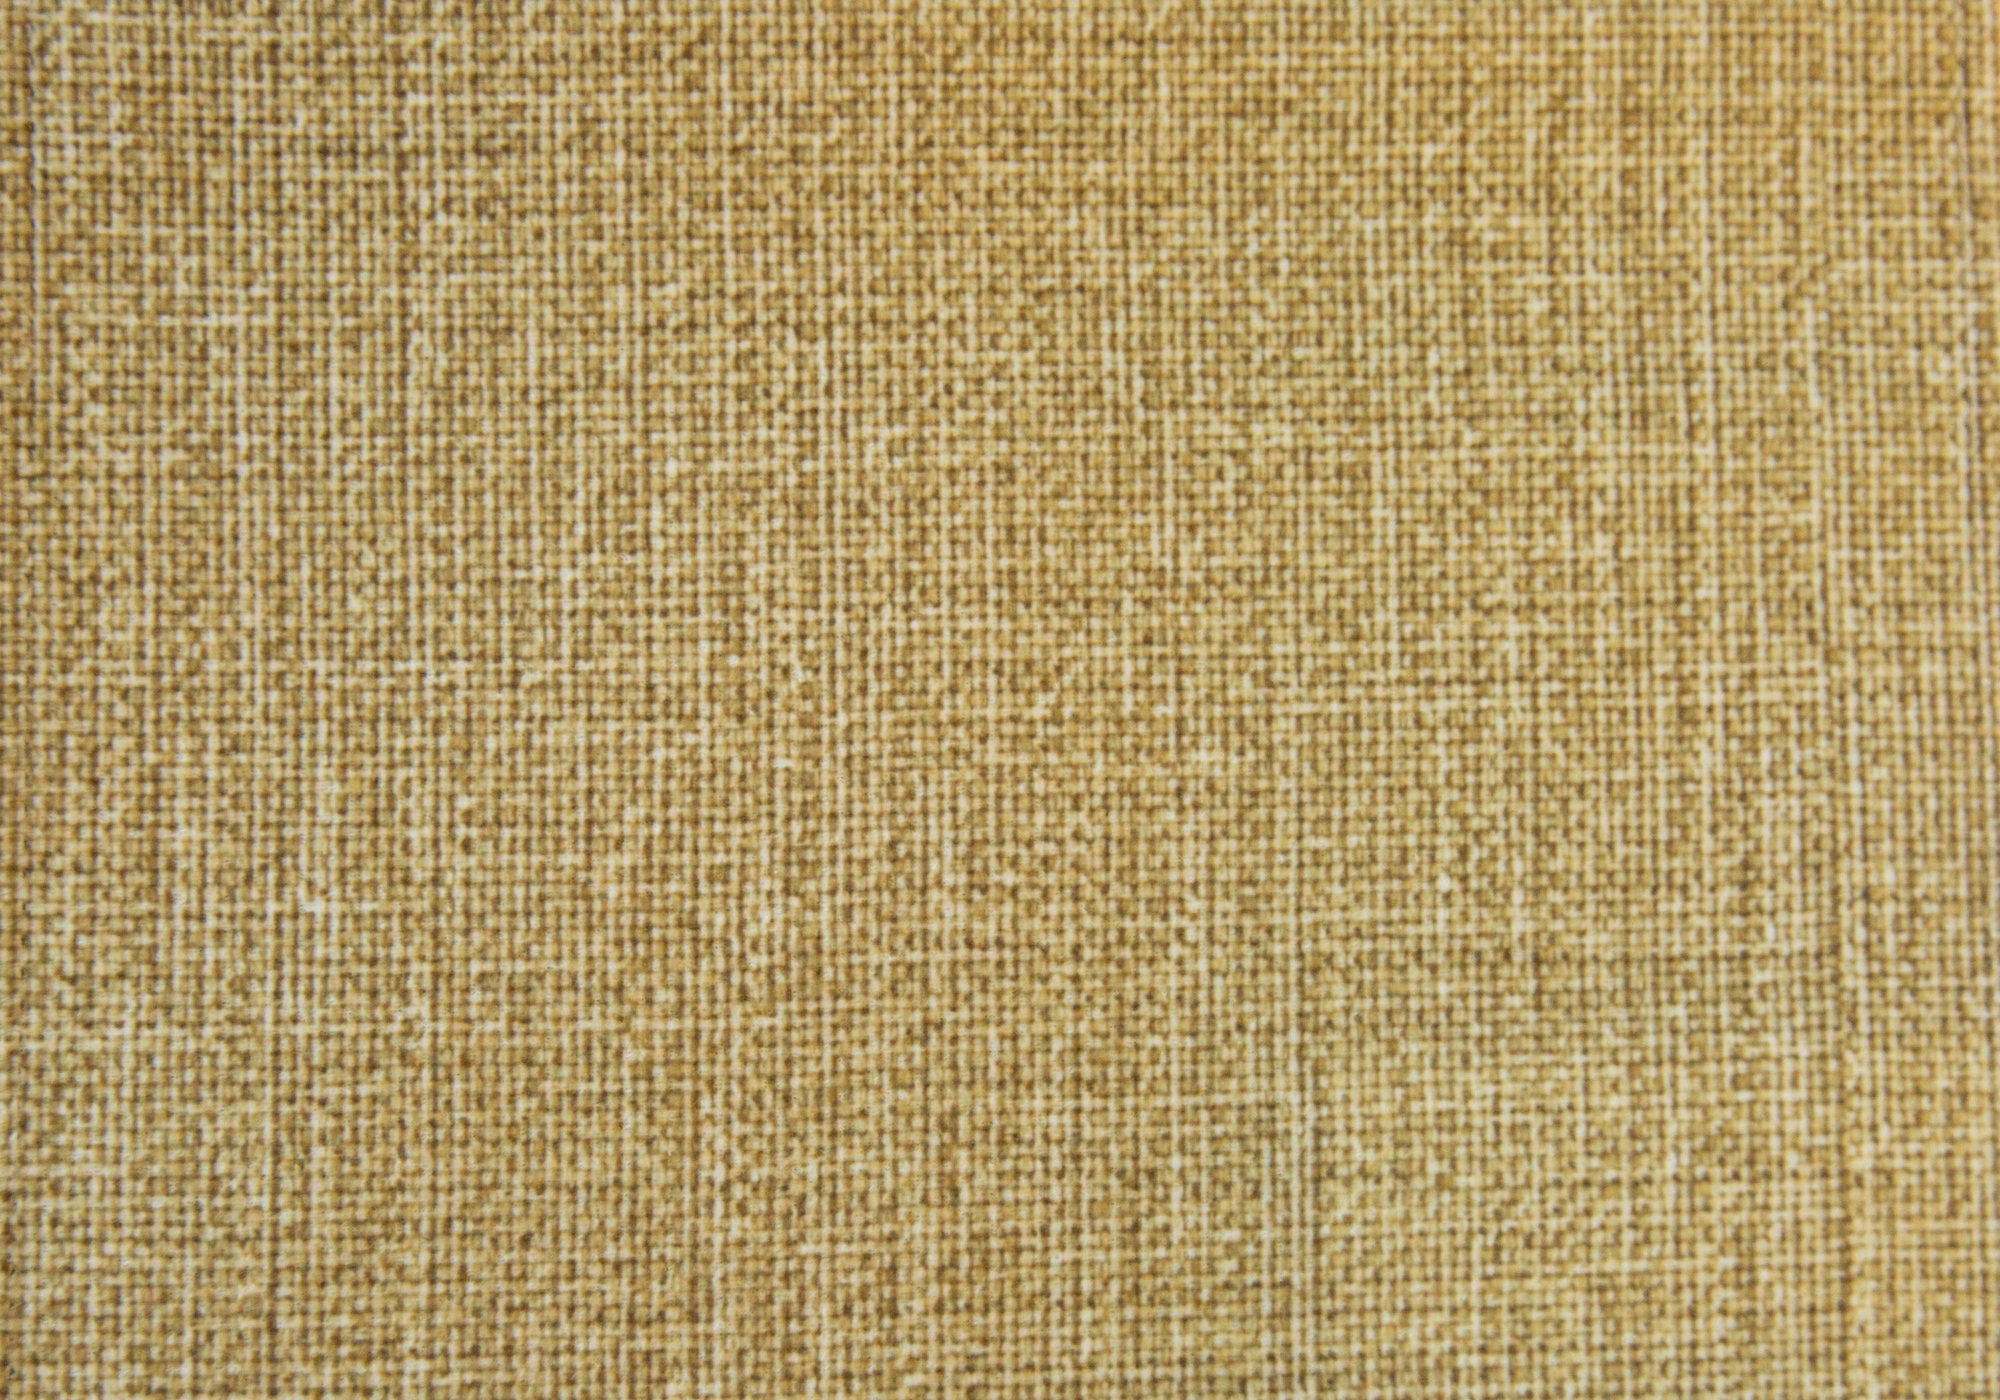 Ottoman - Light Gold Linen-Look Fabric